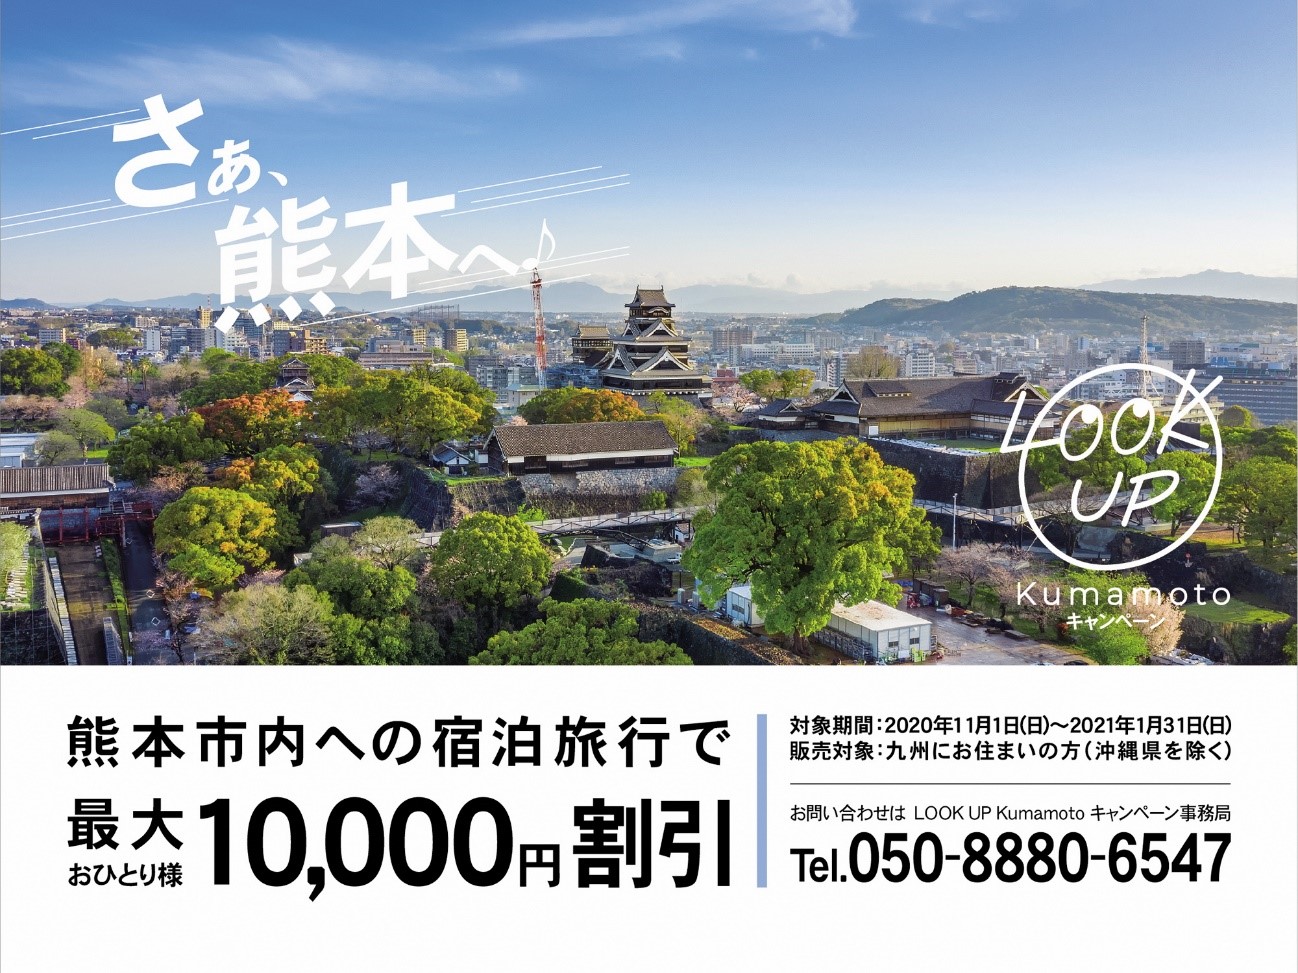 さぁ 熊本へ 最大1万円割引 Lookup Kumamotoキャンペーン 11月1日スタート 熊本市のプレスリリース